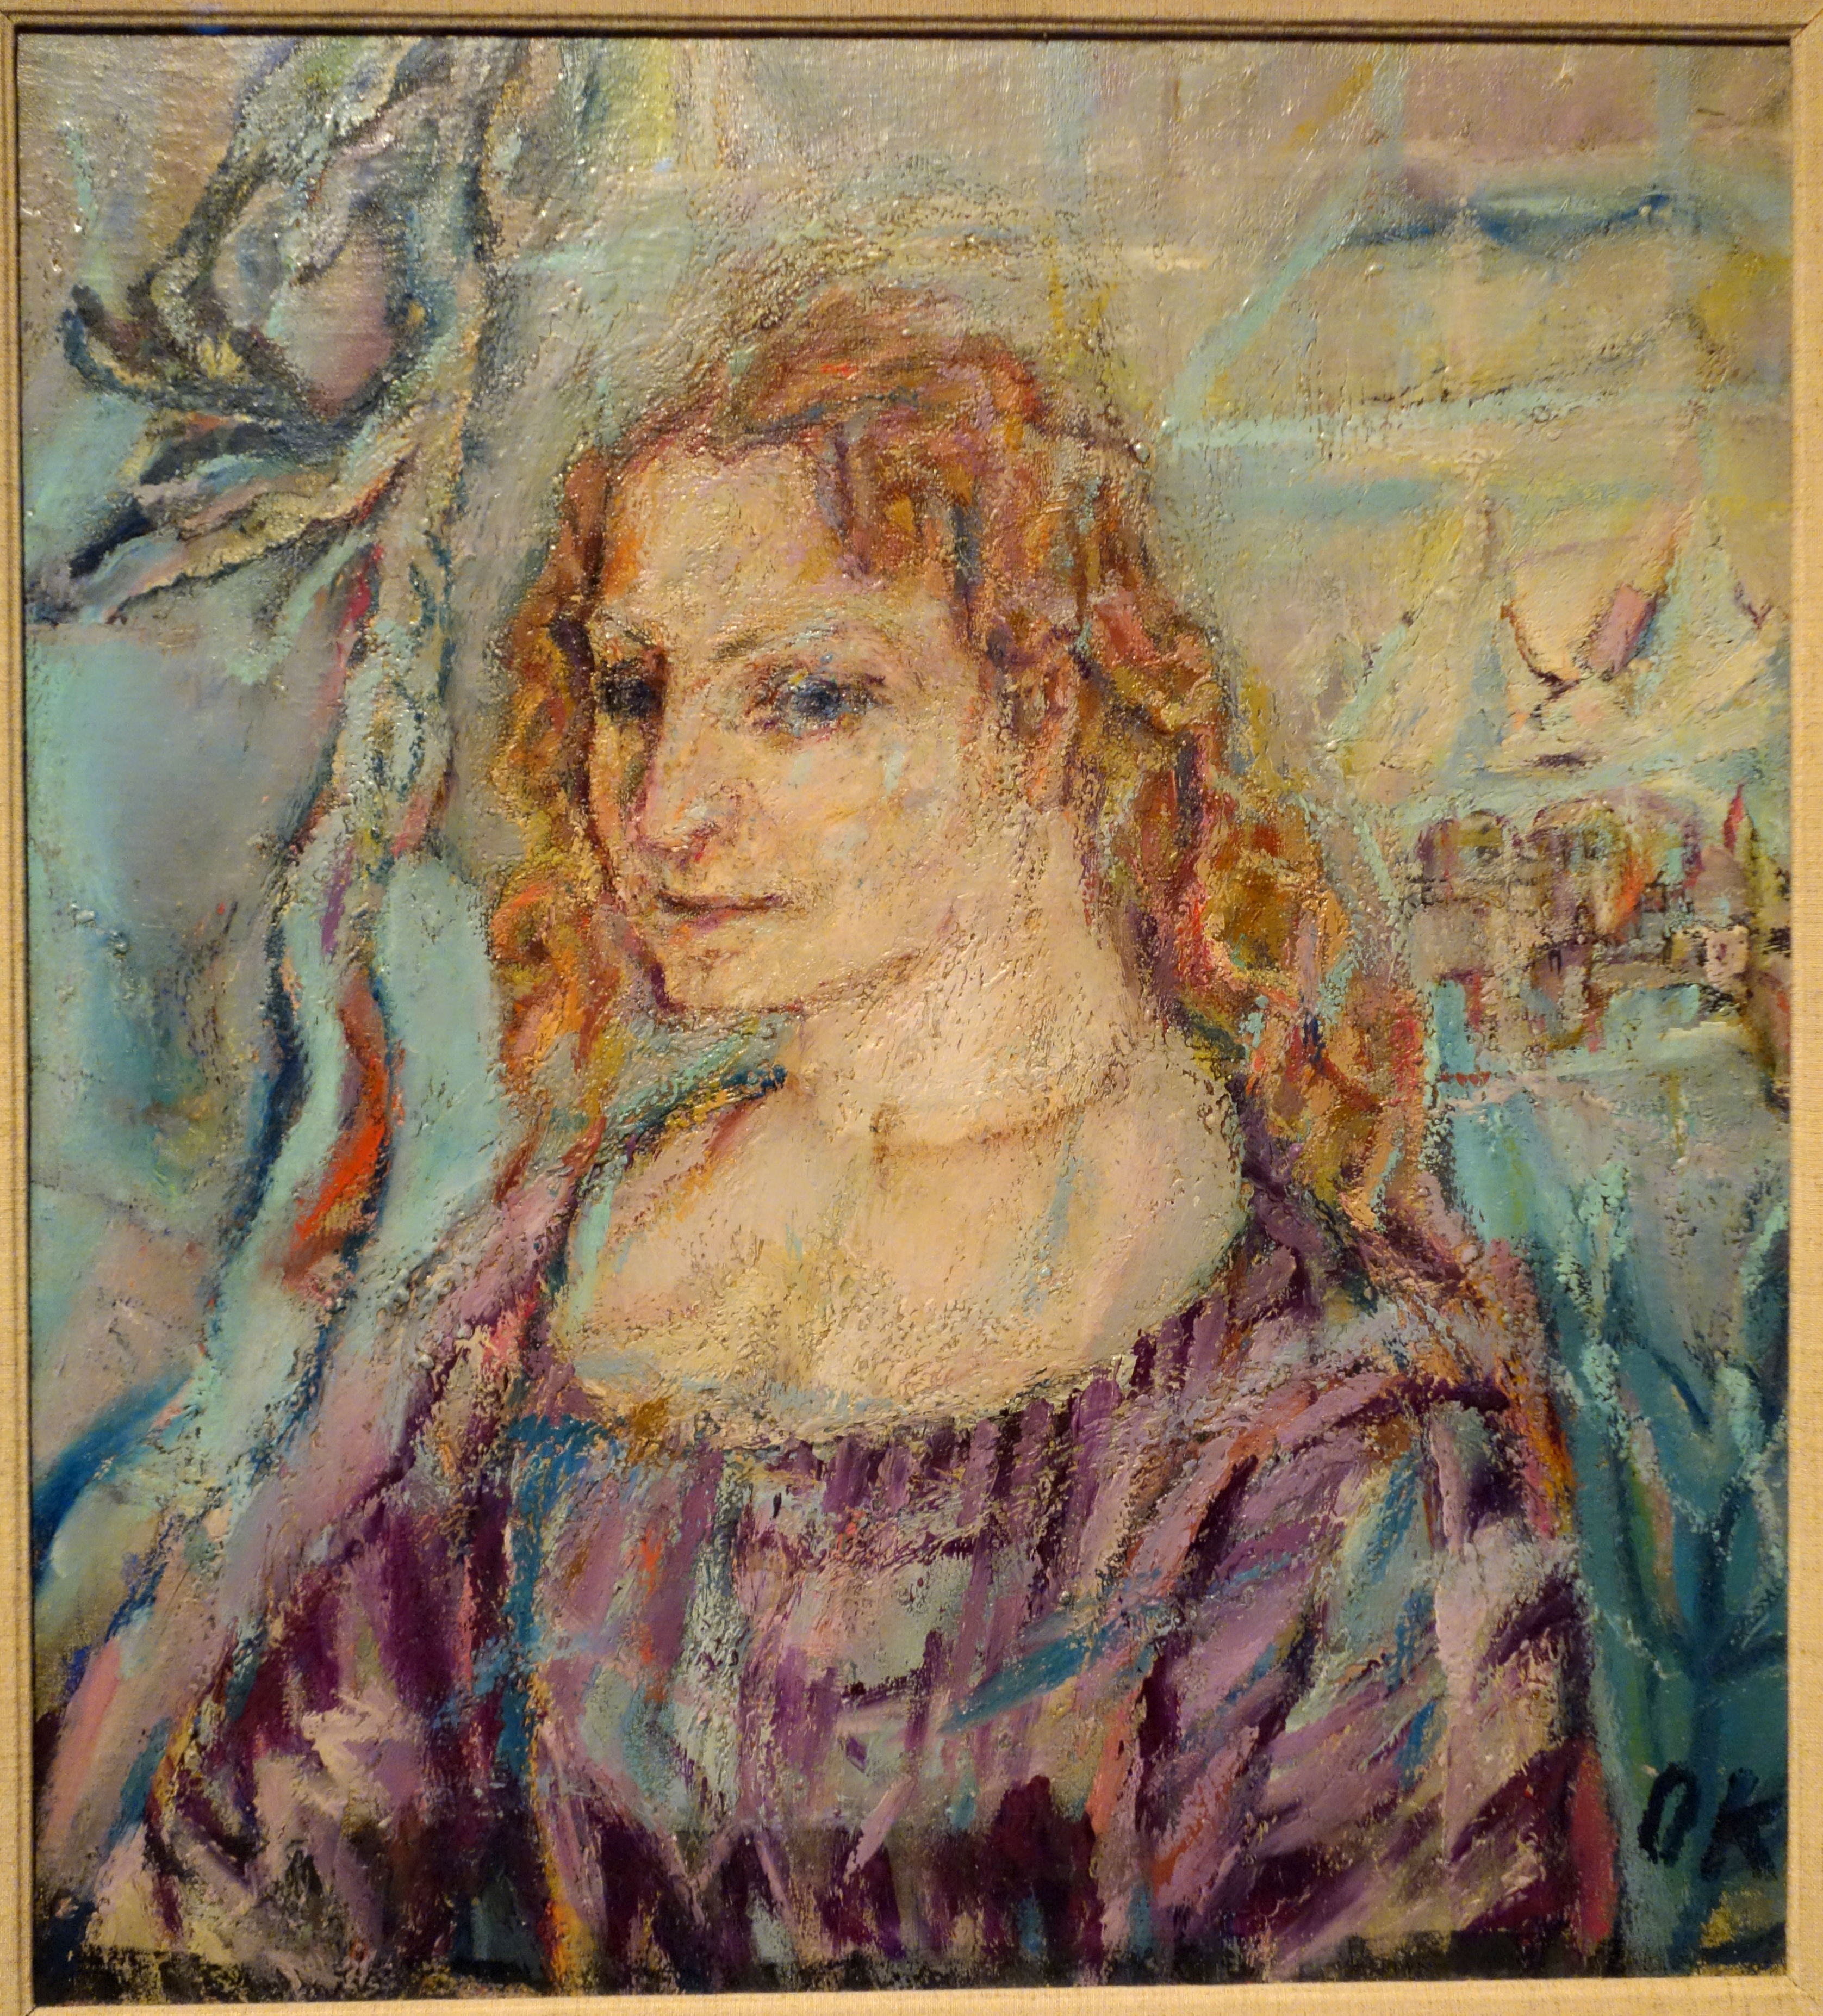 Alma Mahler by Oskar Kokoschka, 1912